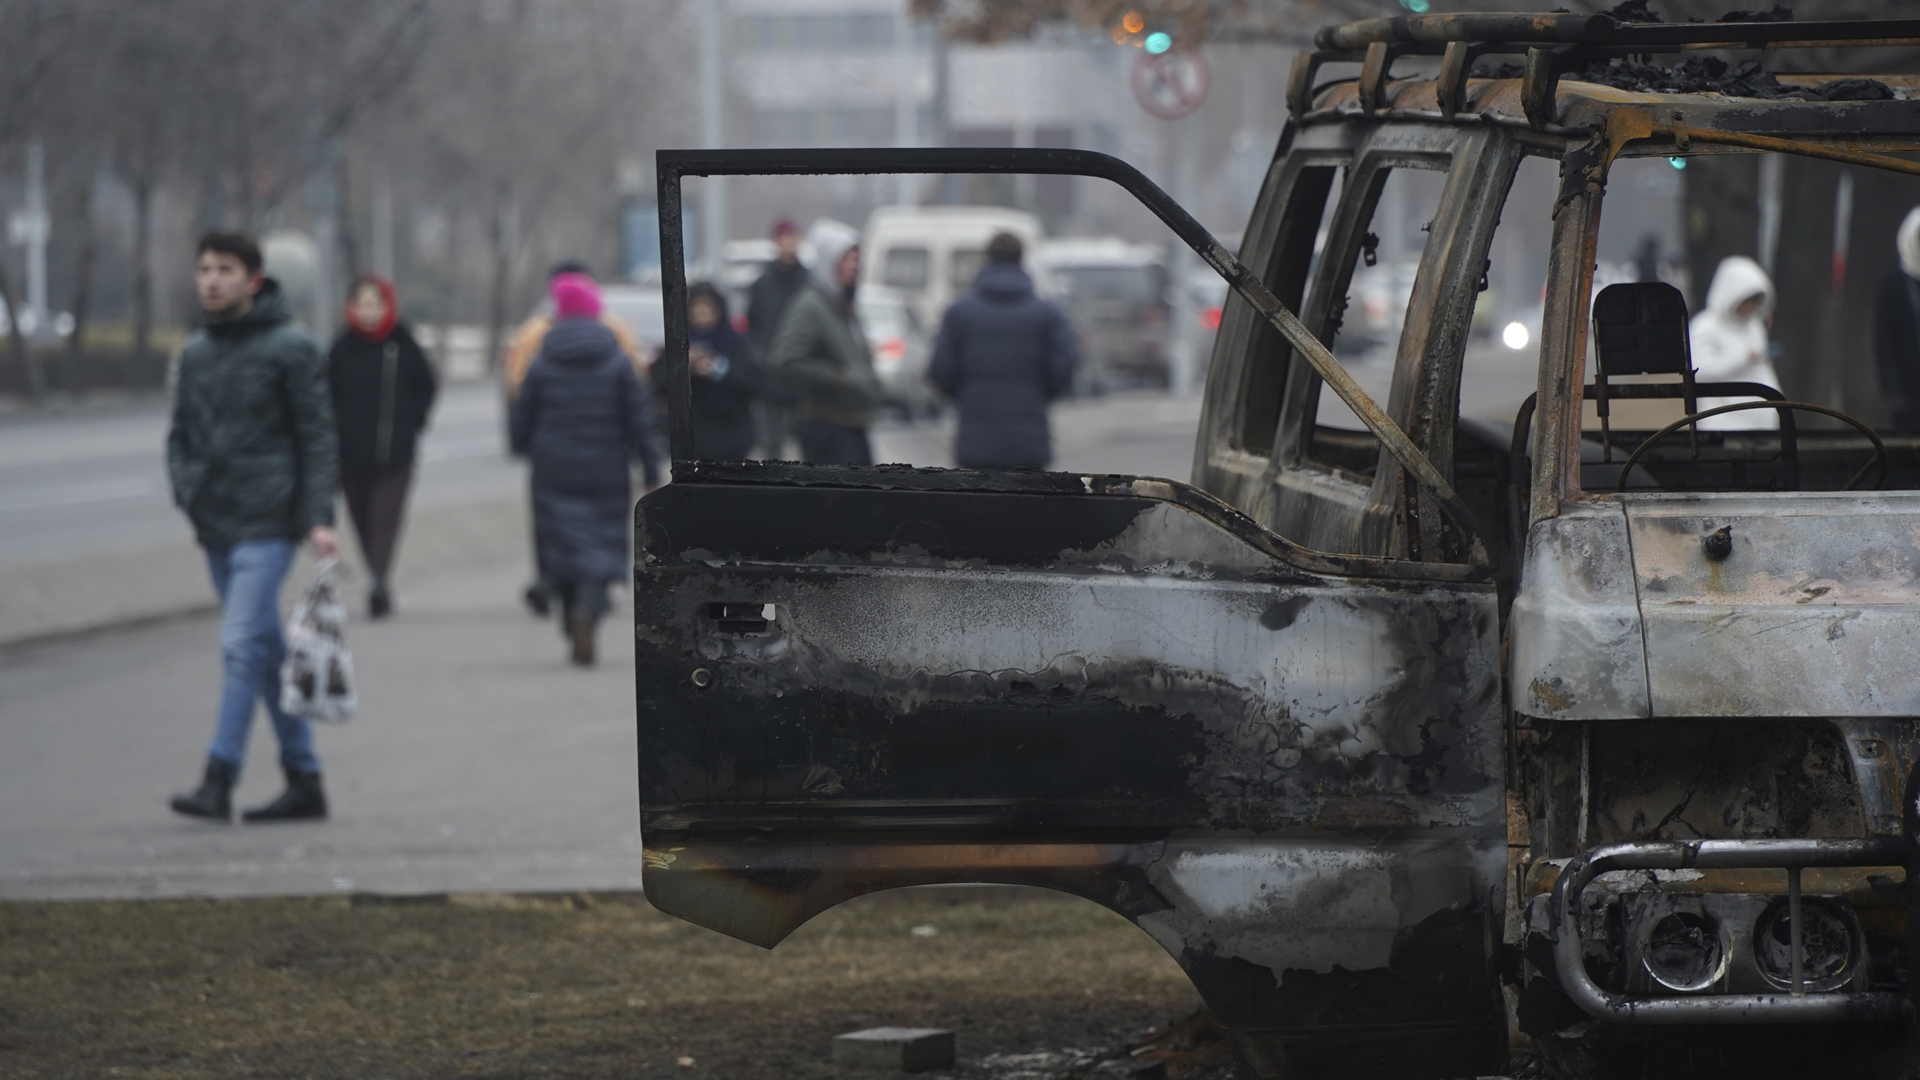 Personen gehen auf einer Straße in Almaty, auf der ein ausgebranntes Fahrzeug steht. | picture alliance/dpa/NUR.KZ/AP